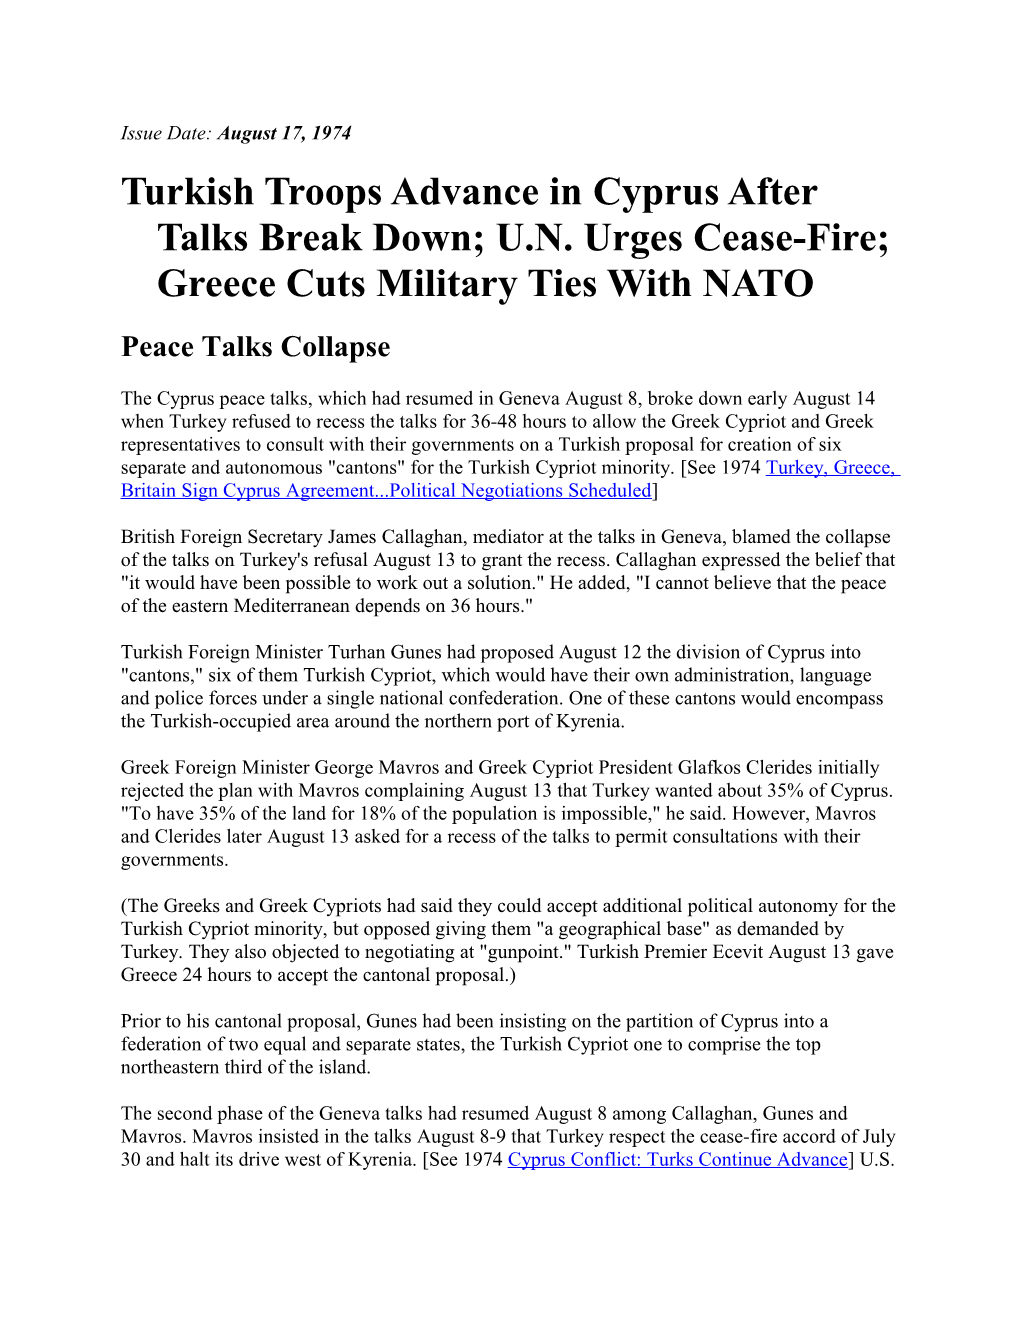 Turkish Troops Advance in Cyprus After Talks Break Down; U.N. Urges Cease-Fire; Greece